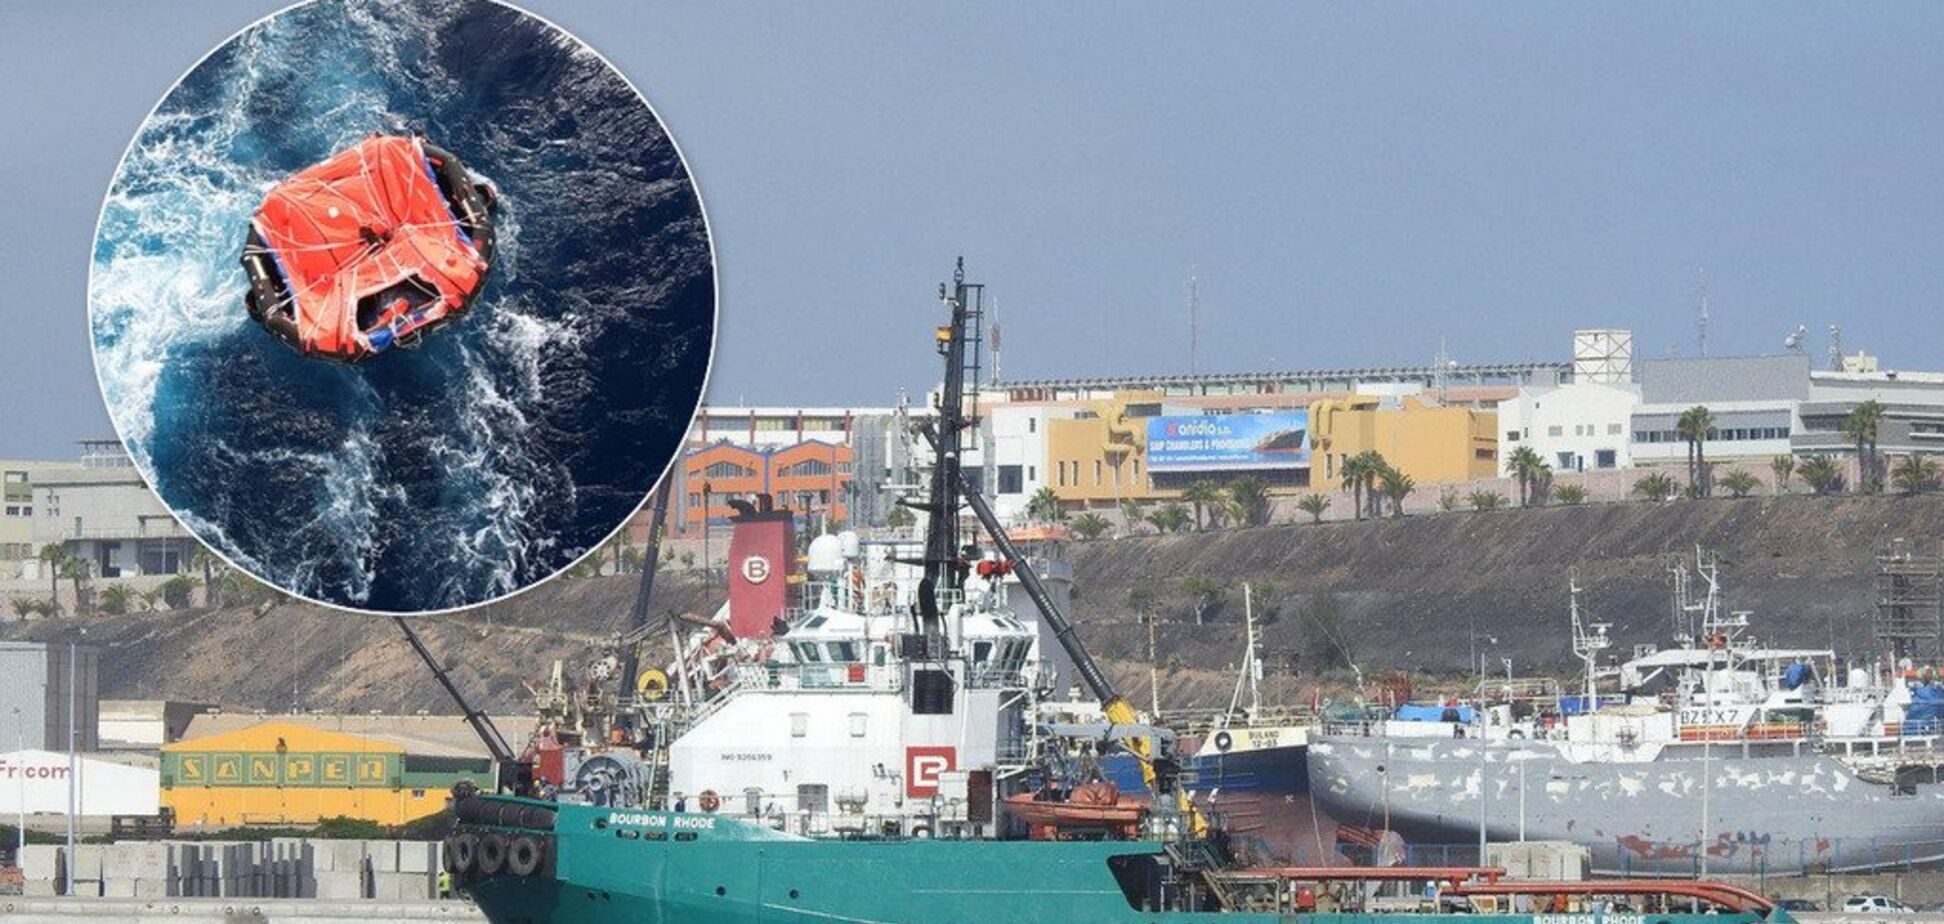 Трагедия в Атлантике: как украинские моряки боролись за жизнь посреди океана